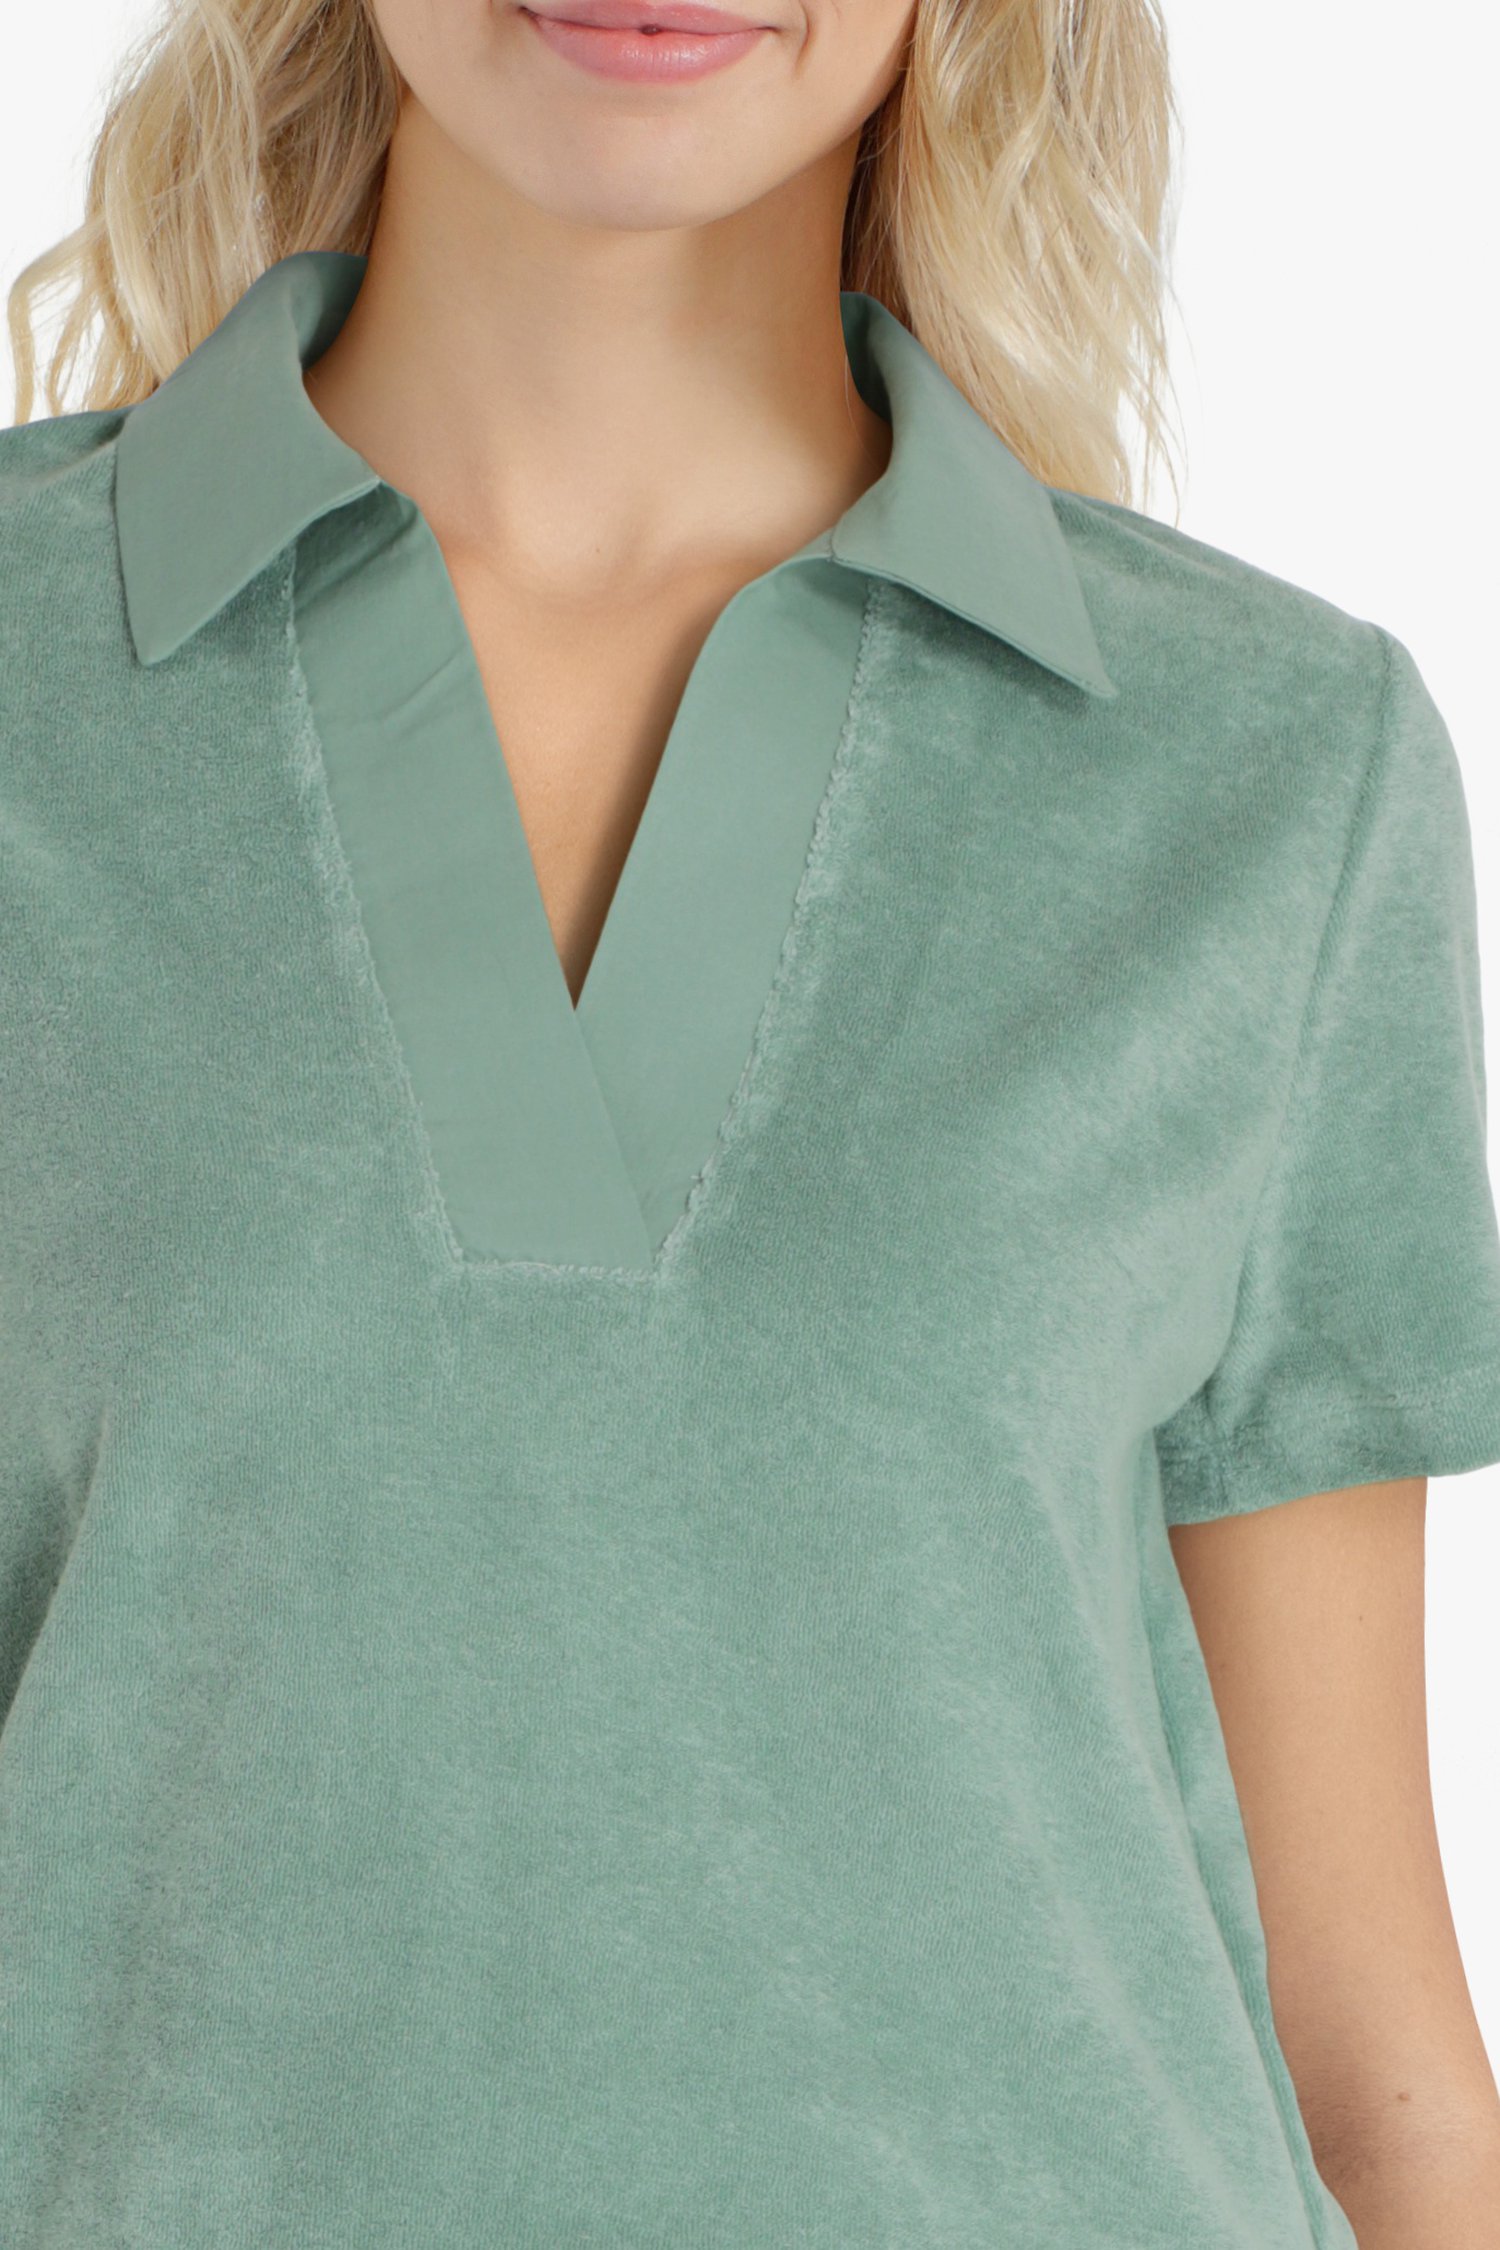 Zeegroen T-shirt met V-hals in badstof van Liberty Island homewear voor Dames